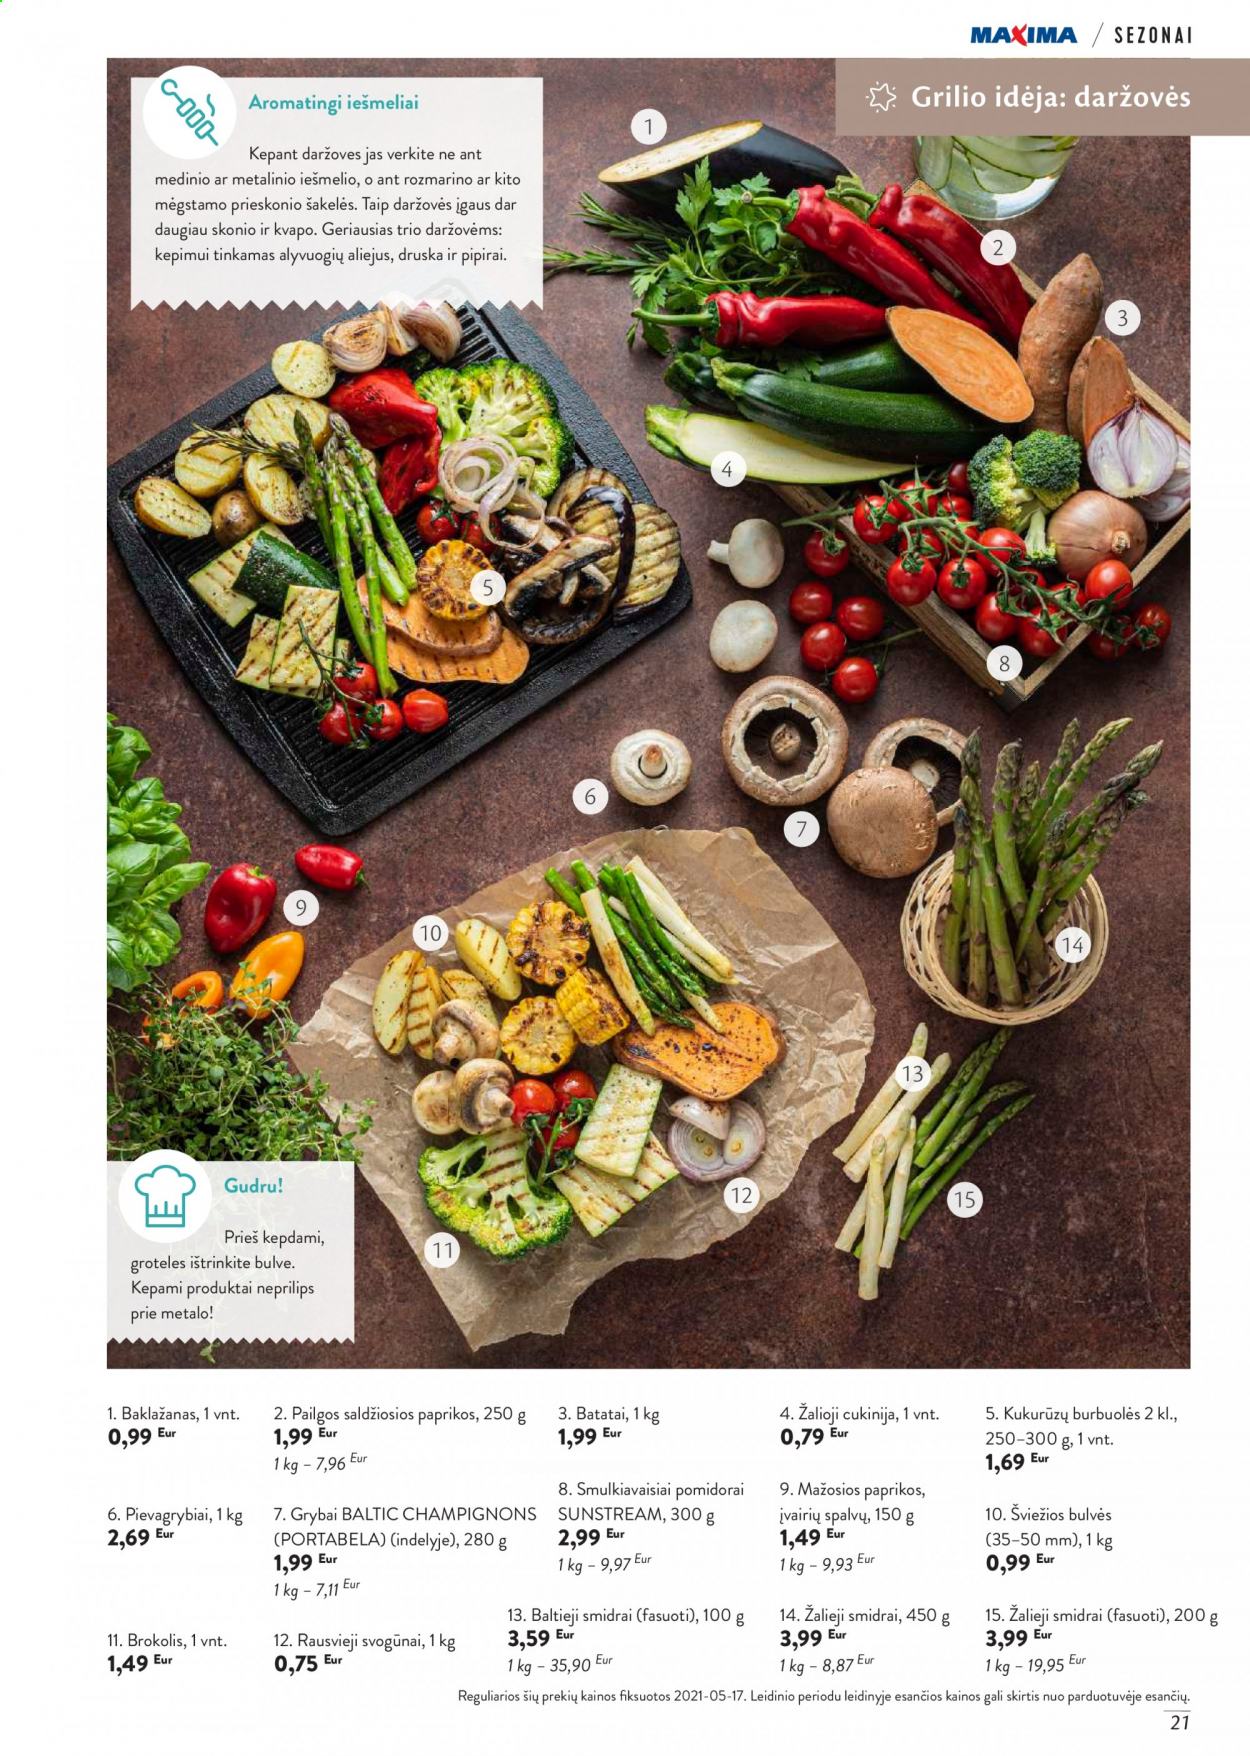 thumbnail - „Maxima“ leidinys - 2021 06 01 - 2021 08 31 - Išpardavimų produktai - baklažanai, bulvės, cukinijos, paprikos, pomidorai, svogūnai, batatai, pievagrybiai, kukurūzų burbuolės, aliejus, alyvuogių aliejus. 21 puslapis.